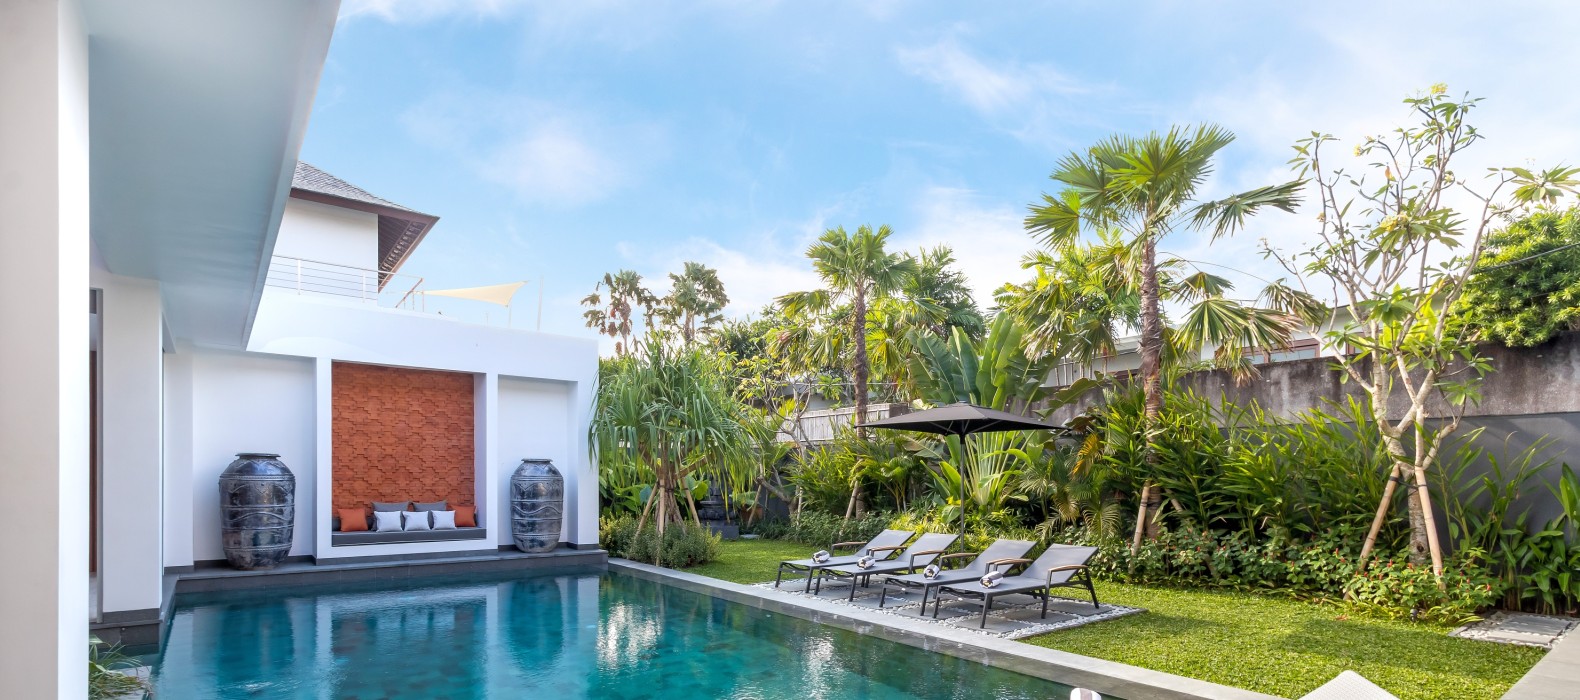 Exterior pool view of Villa Castil de Udara in Bali